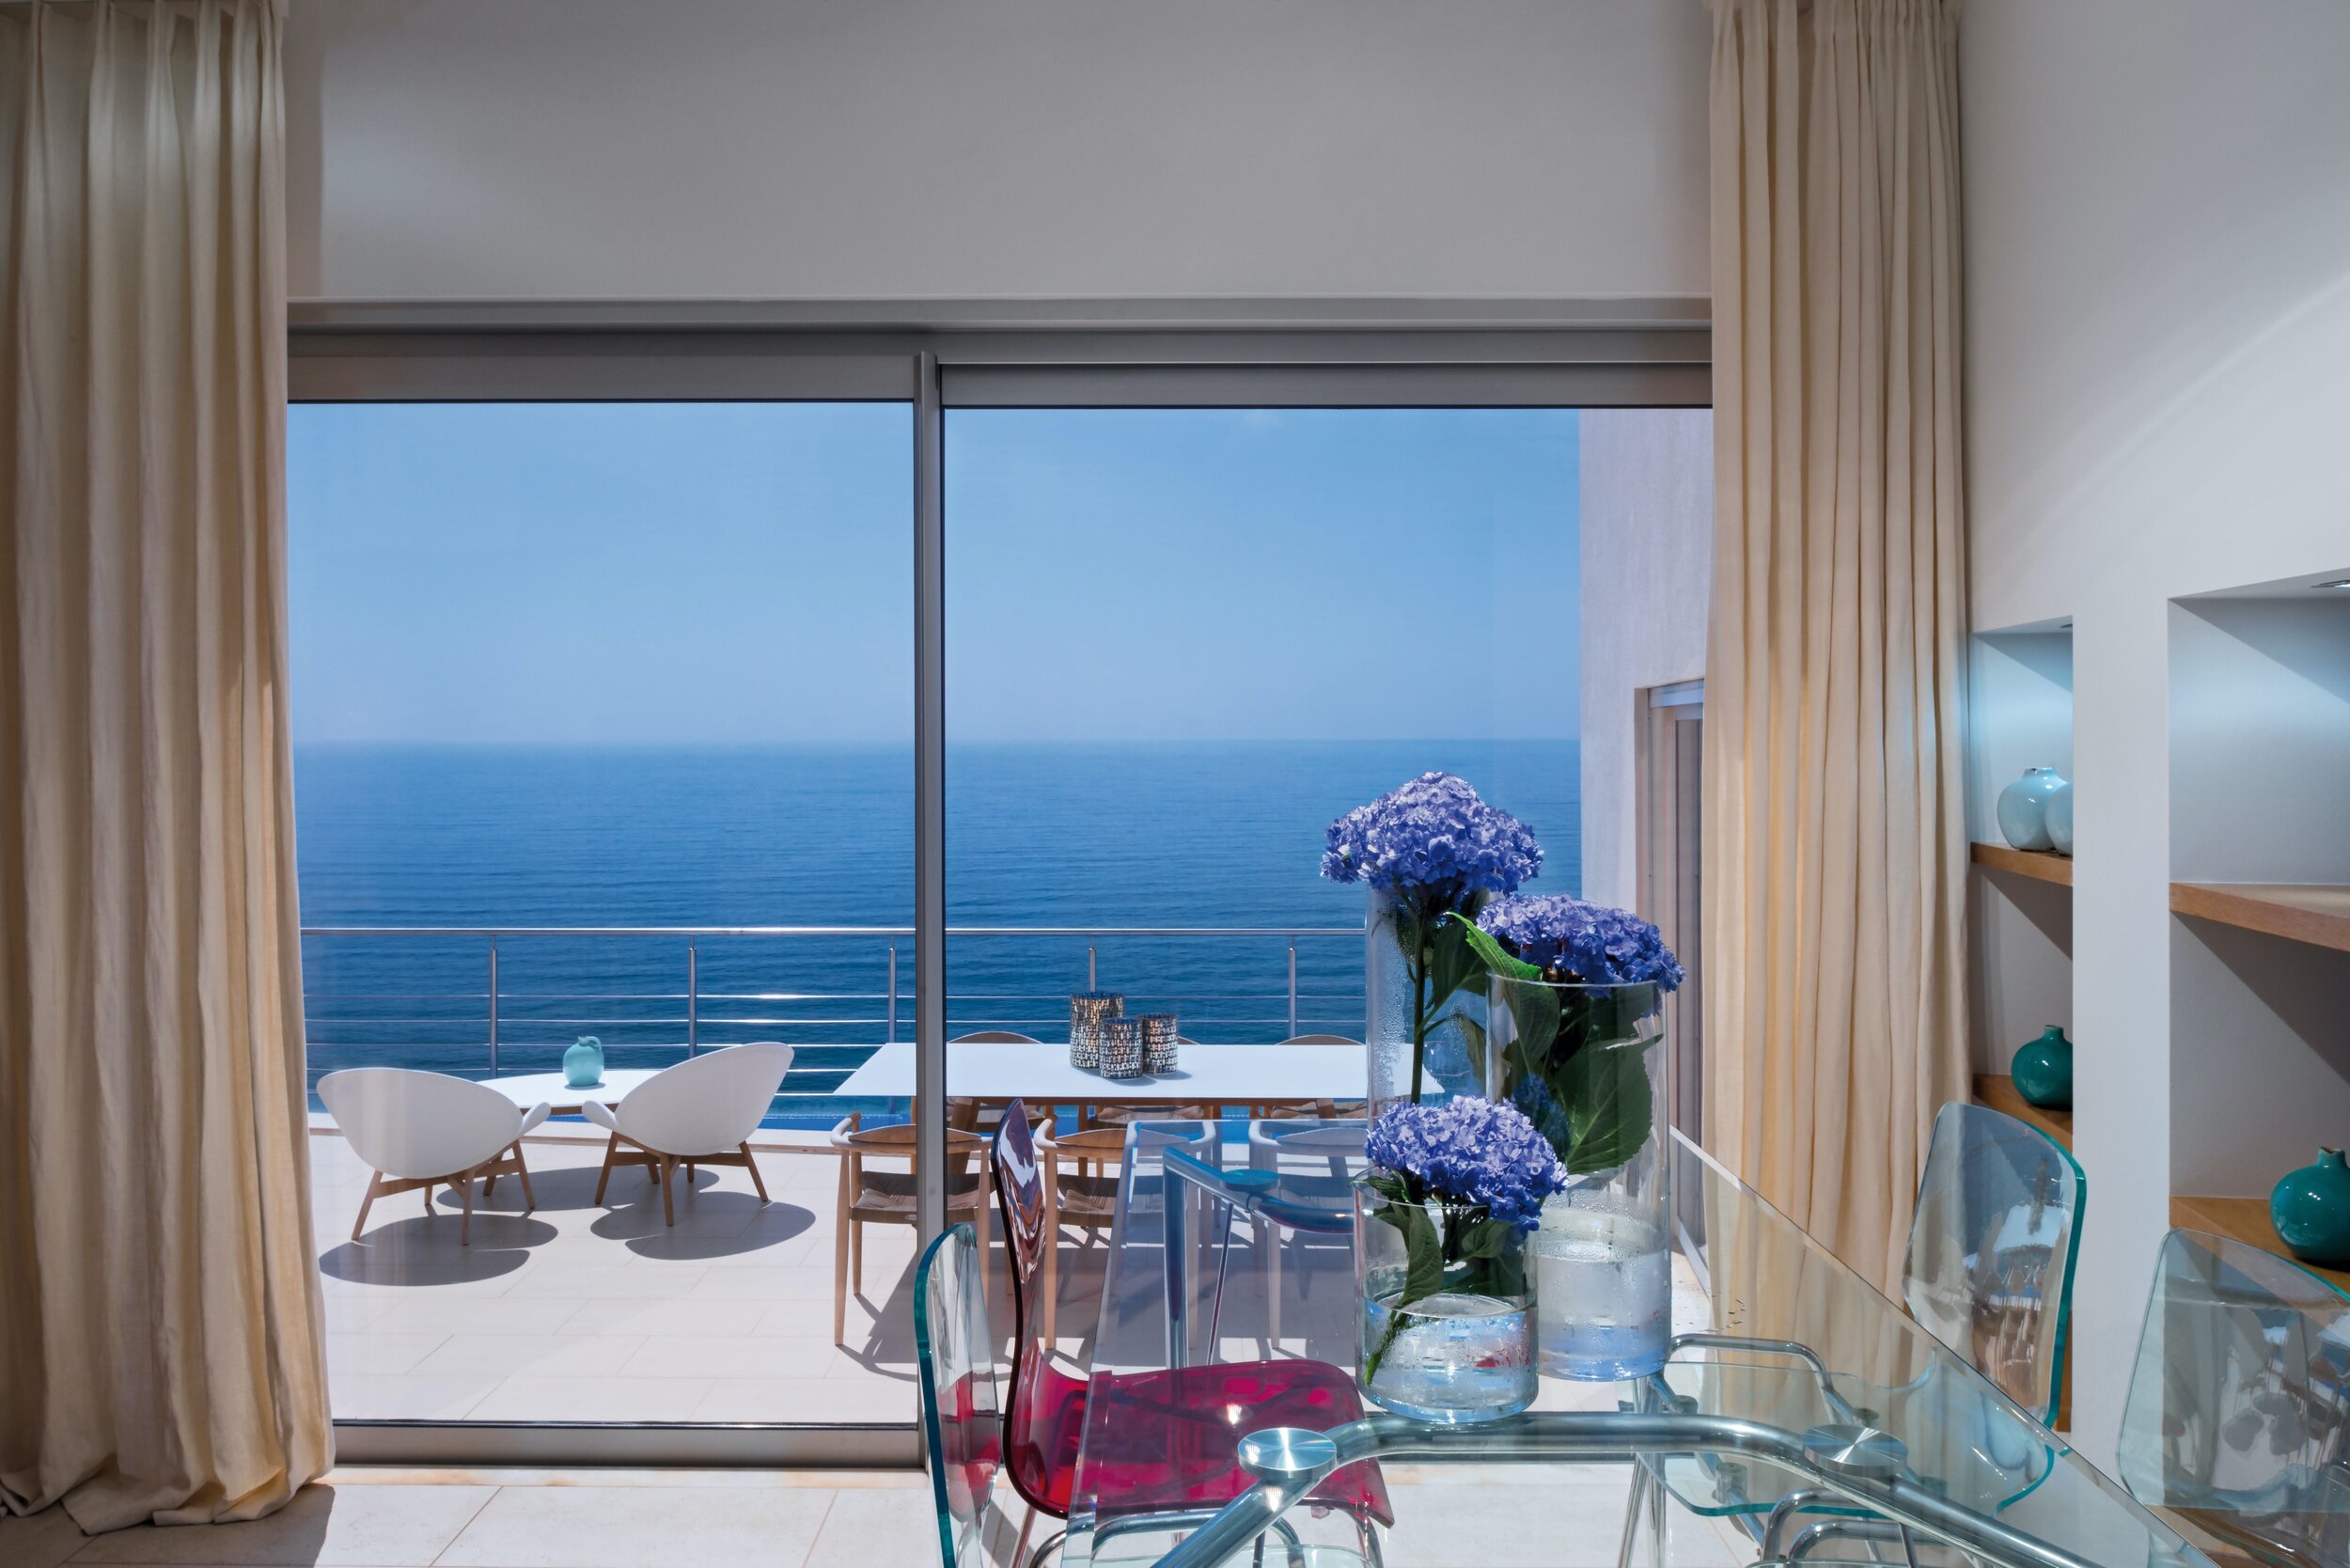 Villa Mar Azul - Dining table interior view.jpg